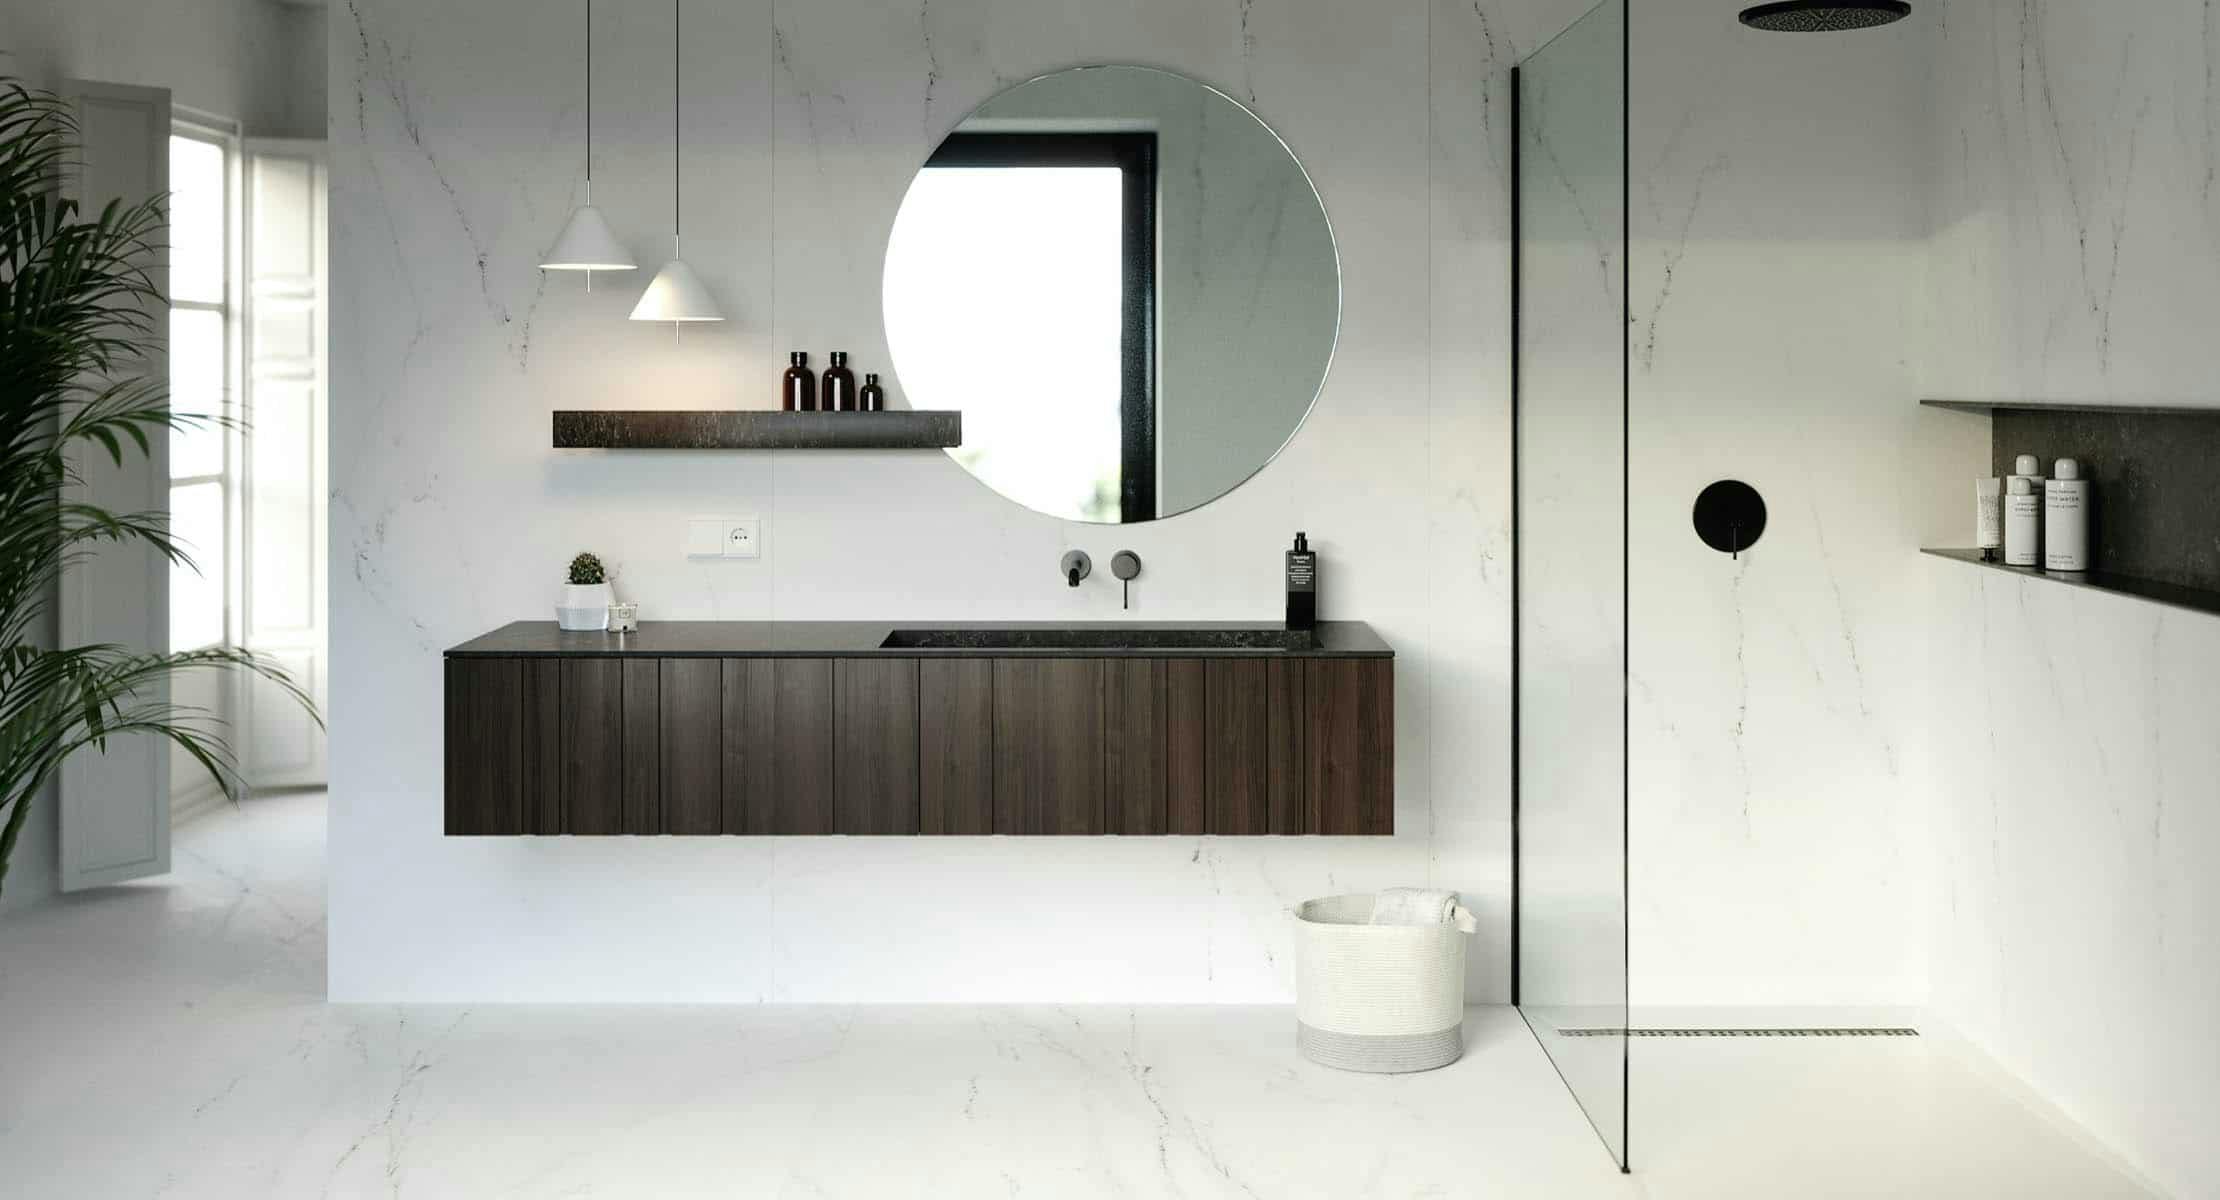 Numéro d'image 32 de la section actuelle de salle-de-bains-minimaliste de Cosentino France